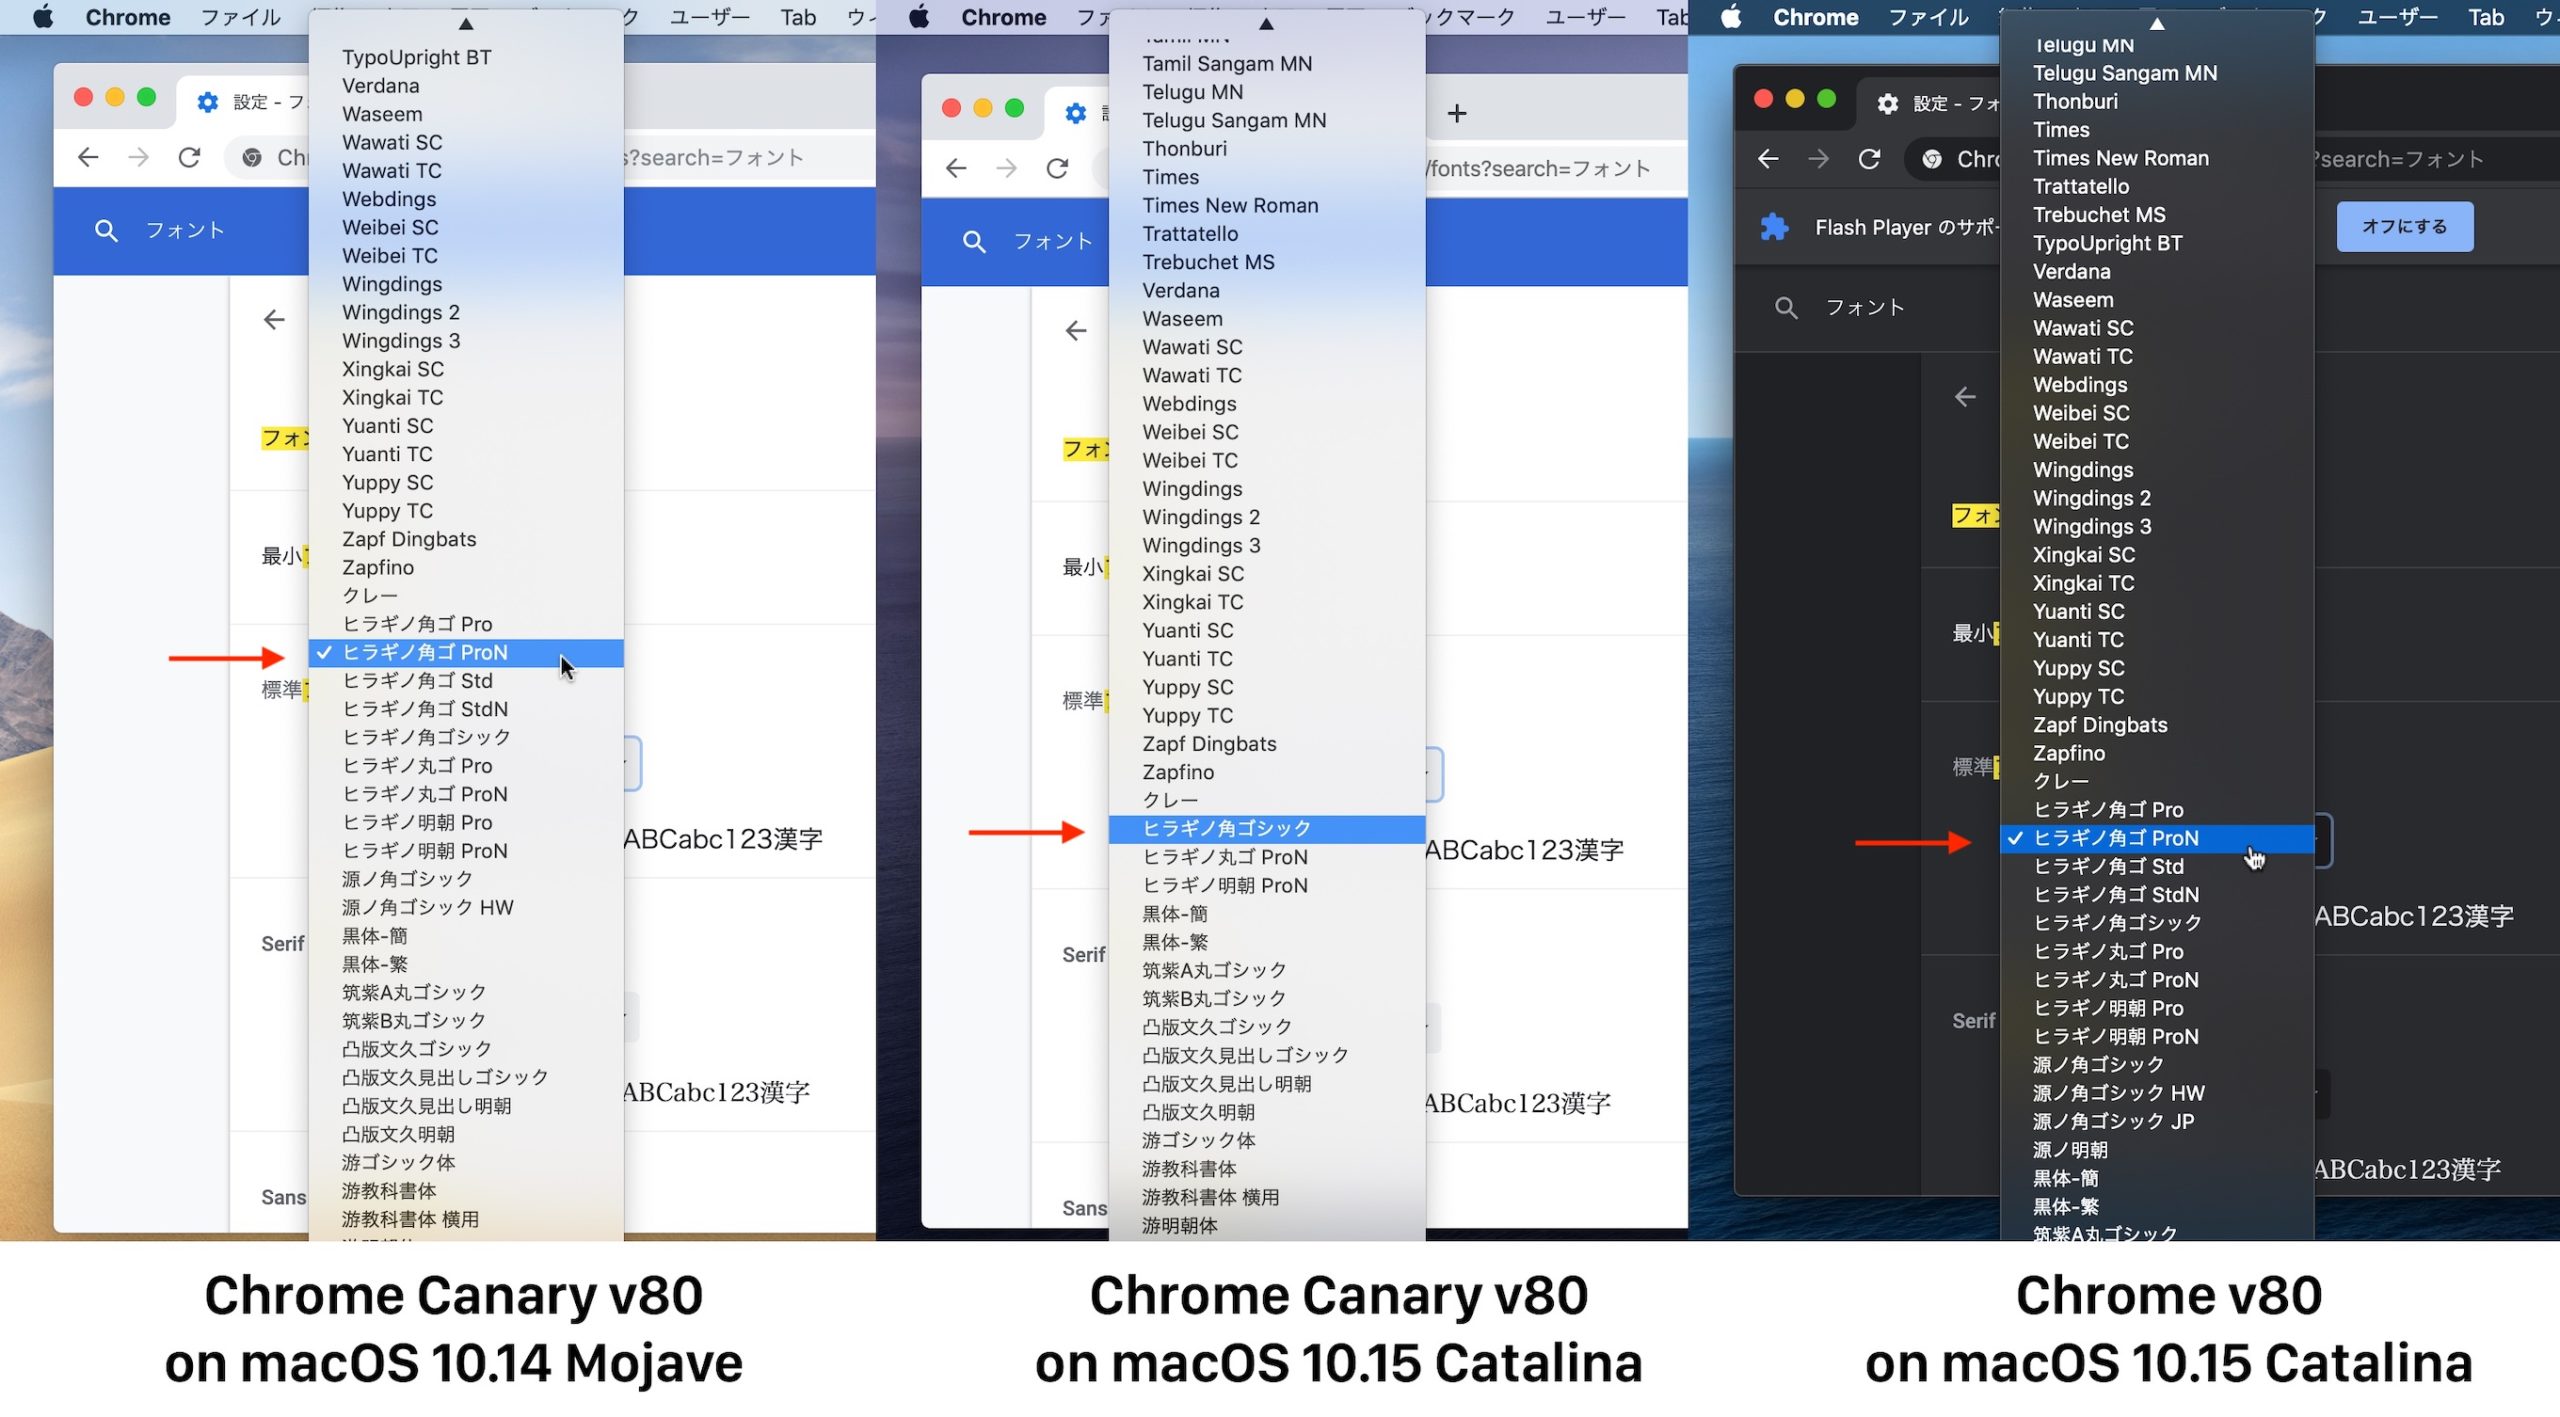 macOS 10.15 CatalinaとGoogle Chromeのフォント設定